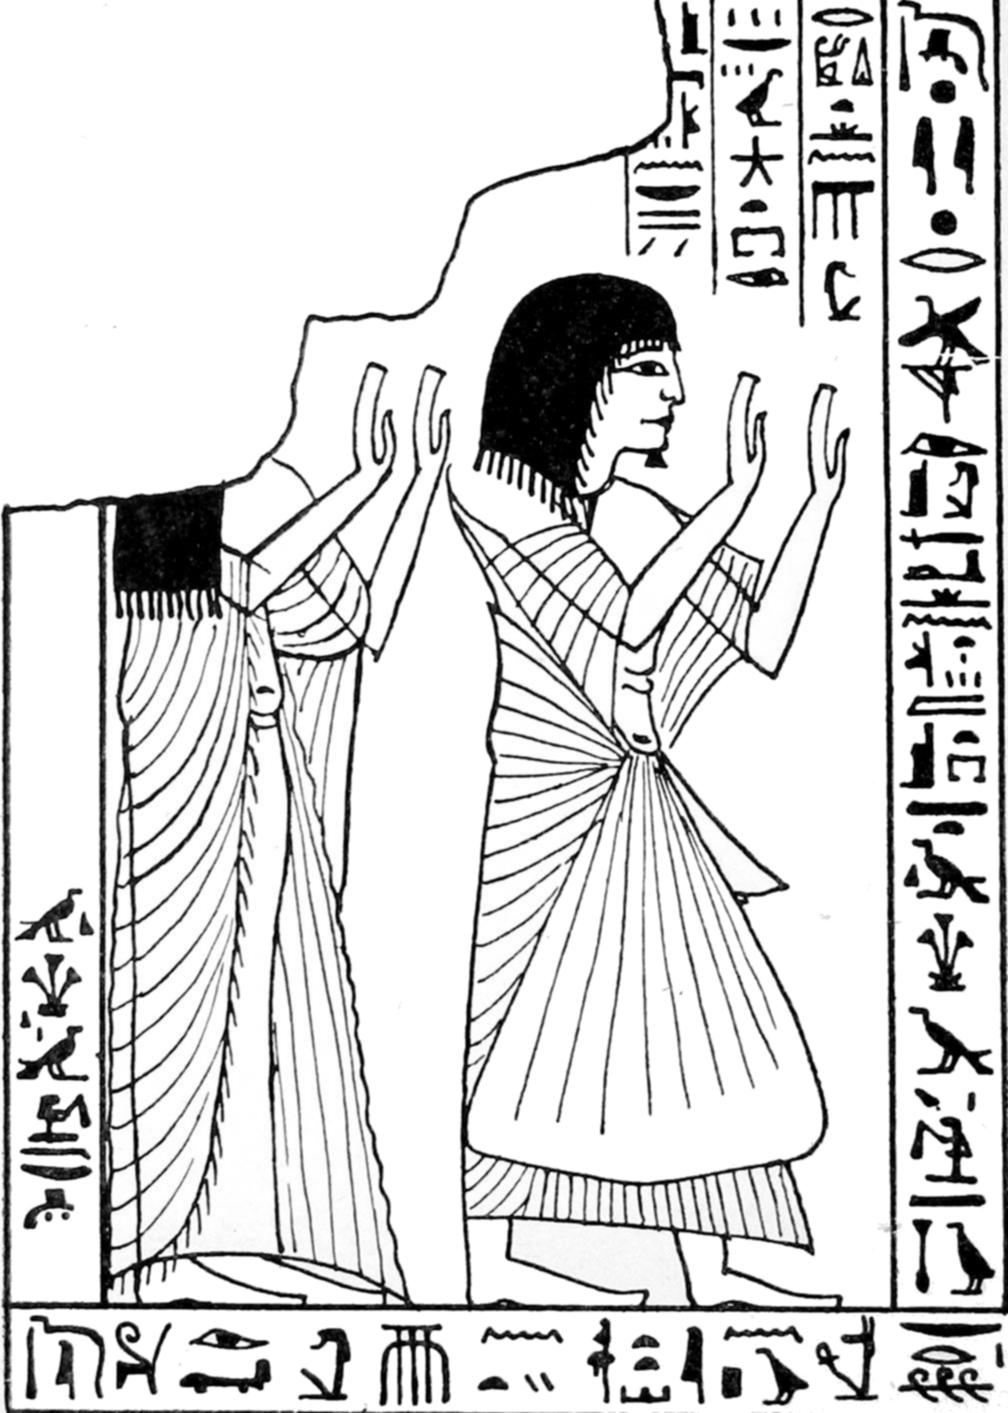 古埃及壁画人物简笔画图片